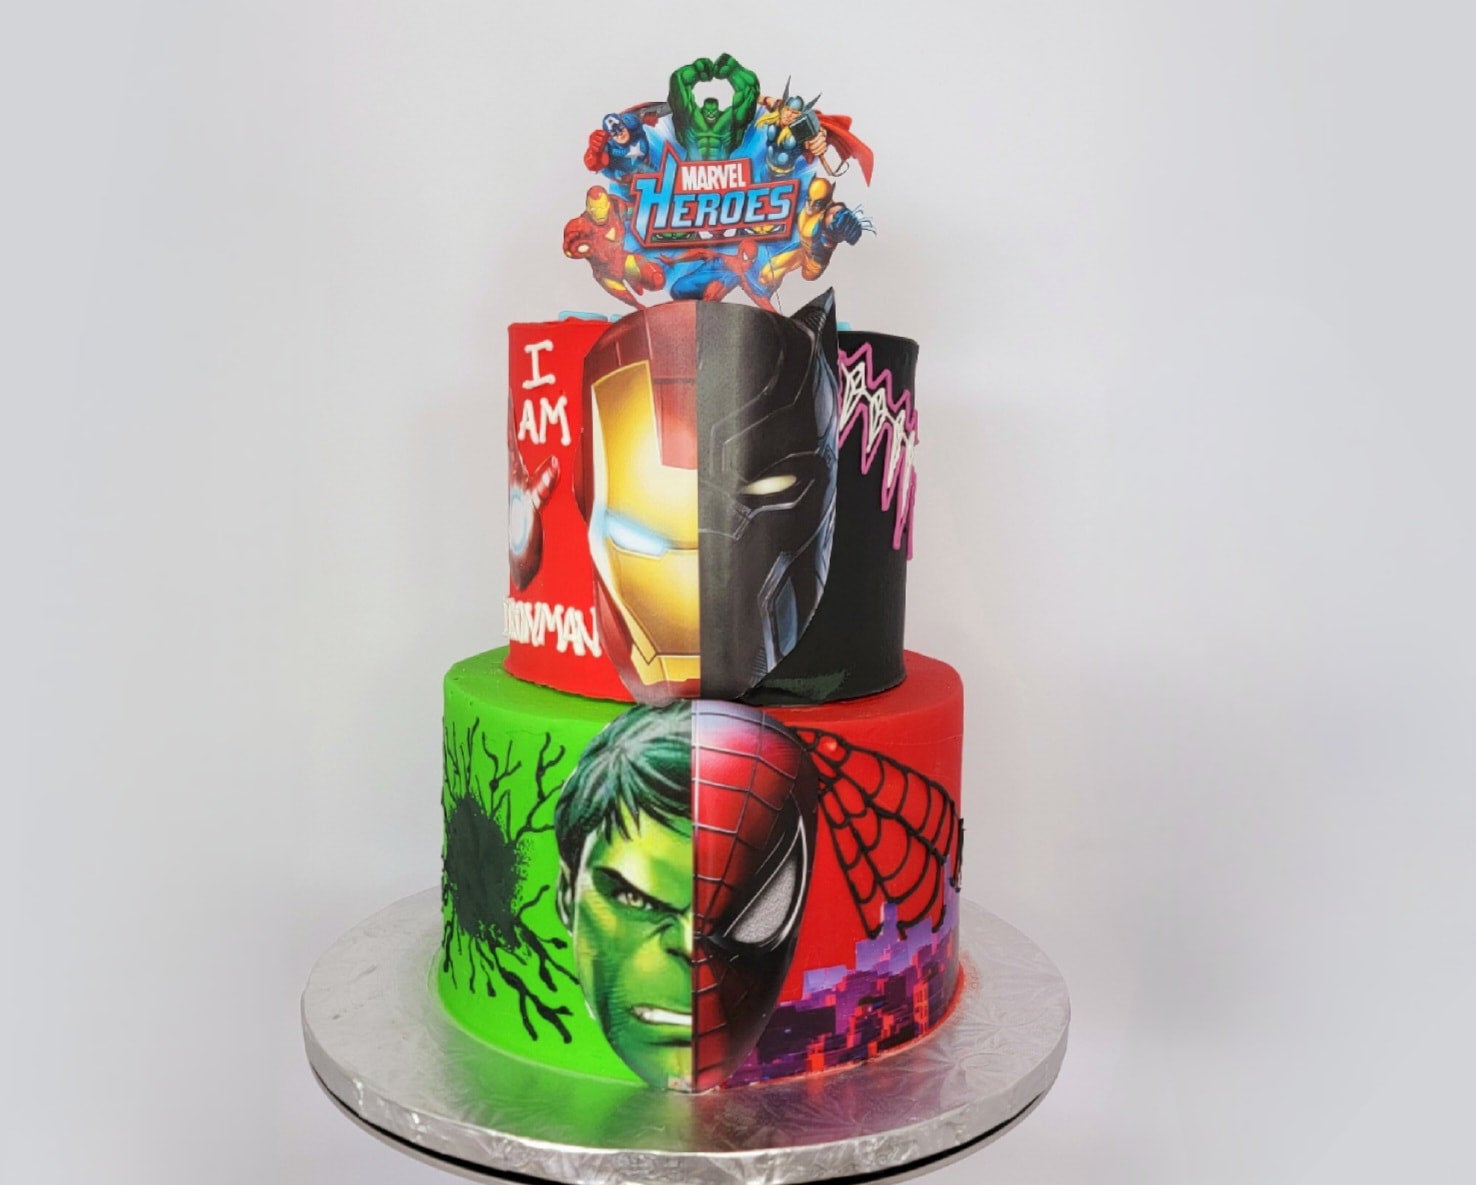 Superhero Birthday Cake - Batman/Spiderman | Mundheep Makes - YouTube